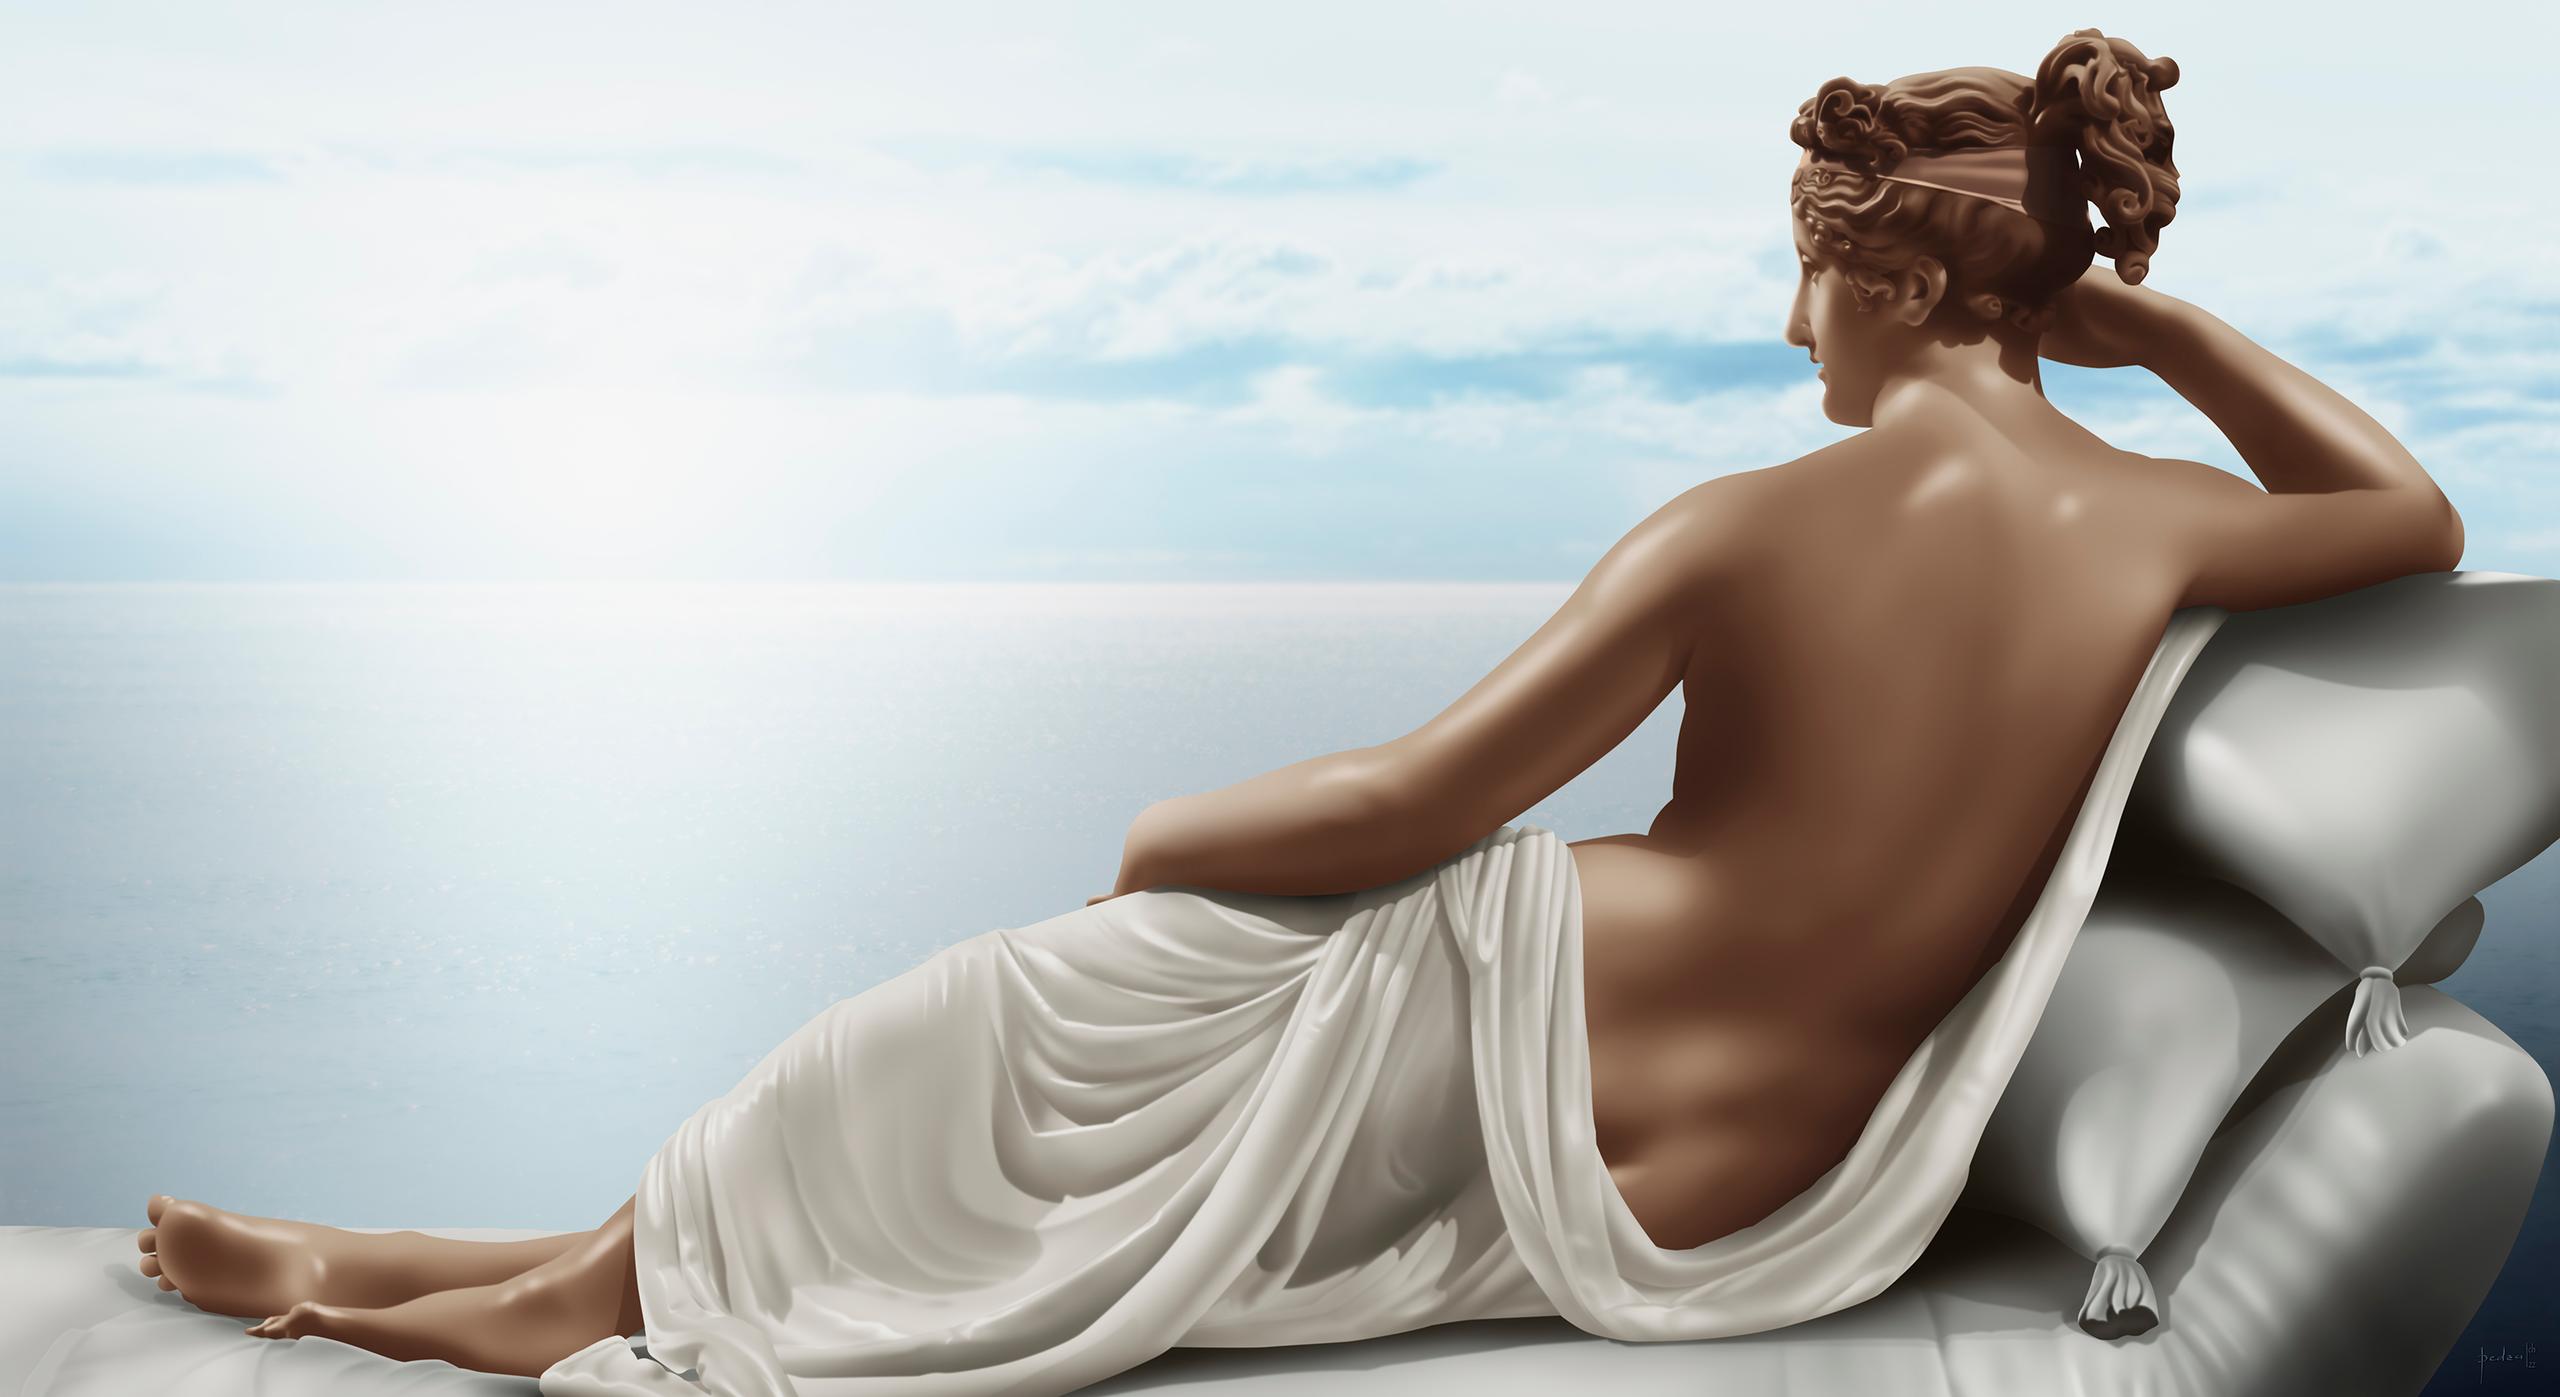 Pintura inspirada en: Paolina Borghese como Venus - Antonio Canova